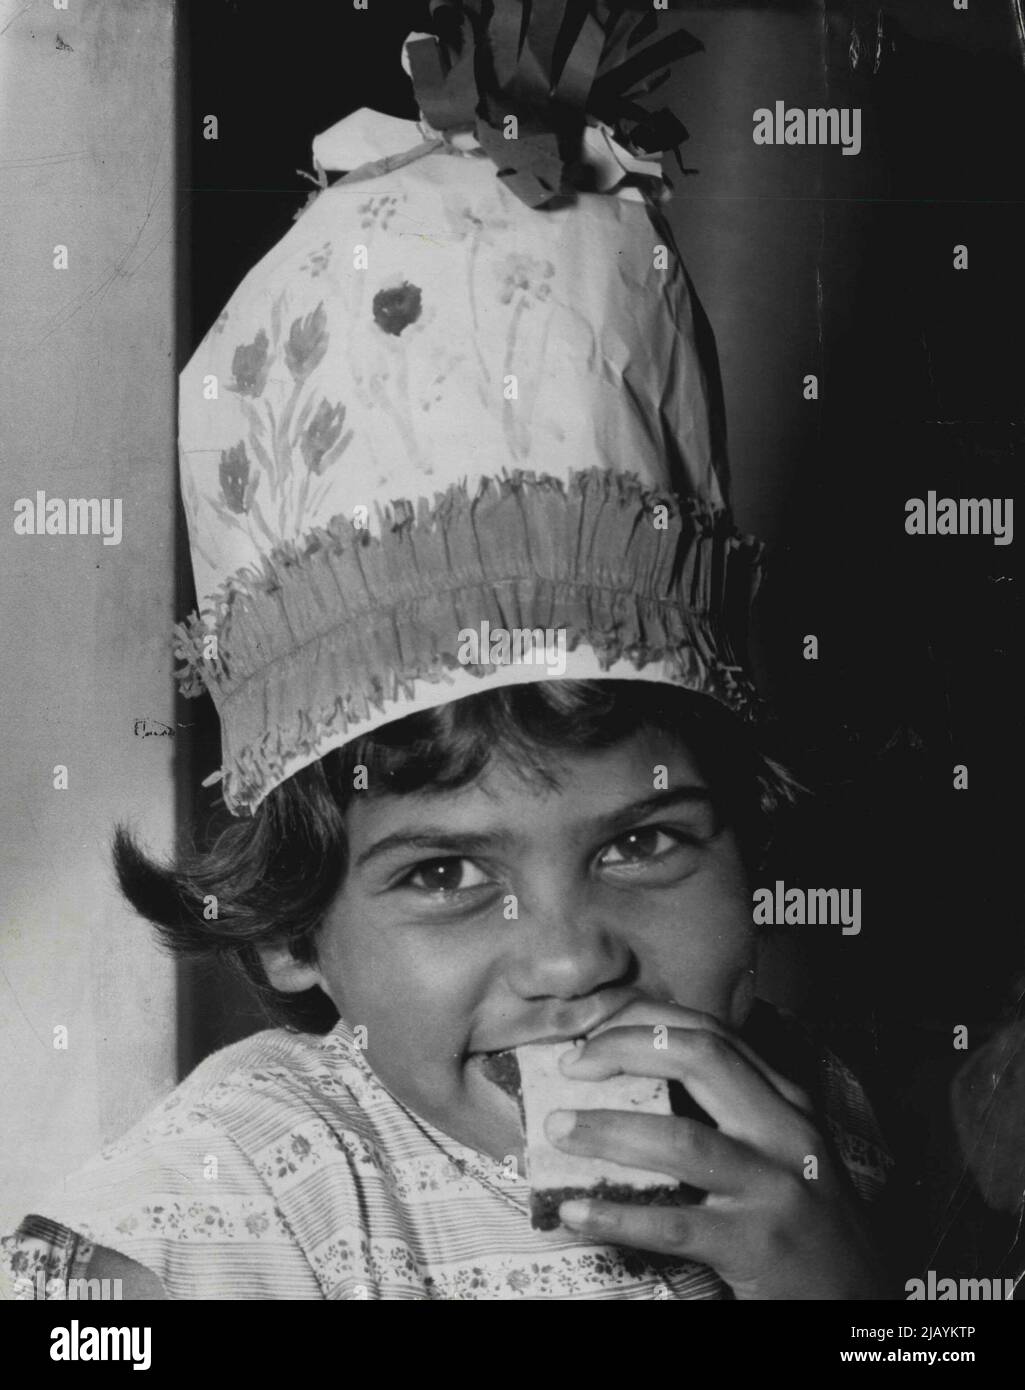 Le petit enfant autochtone, Eveline Stewart, 6 ans, mène une enfance heureuse à l'école de la Perouse. 15 décembre 1955. Banque D'Images